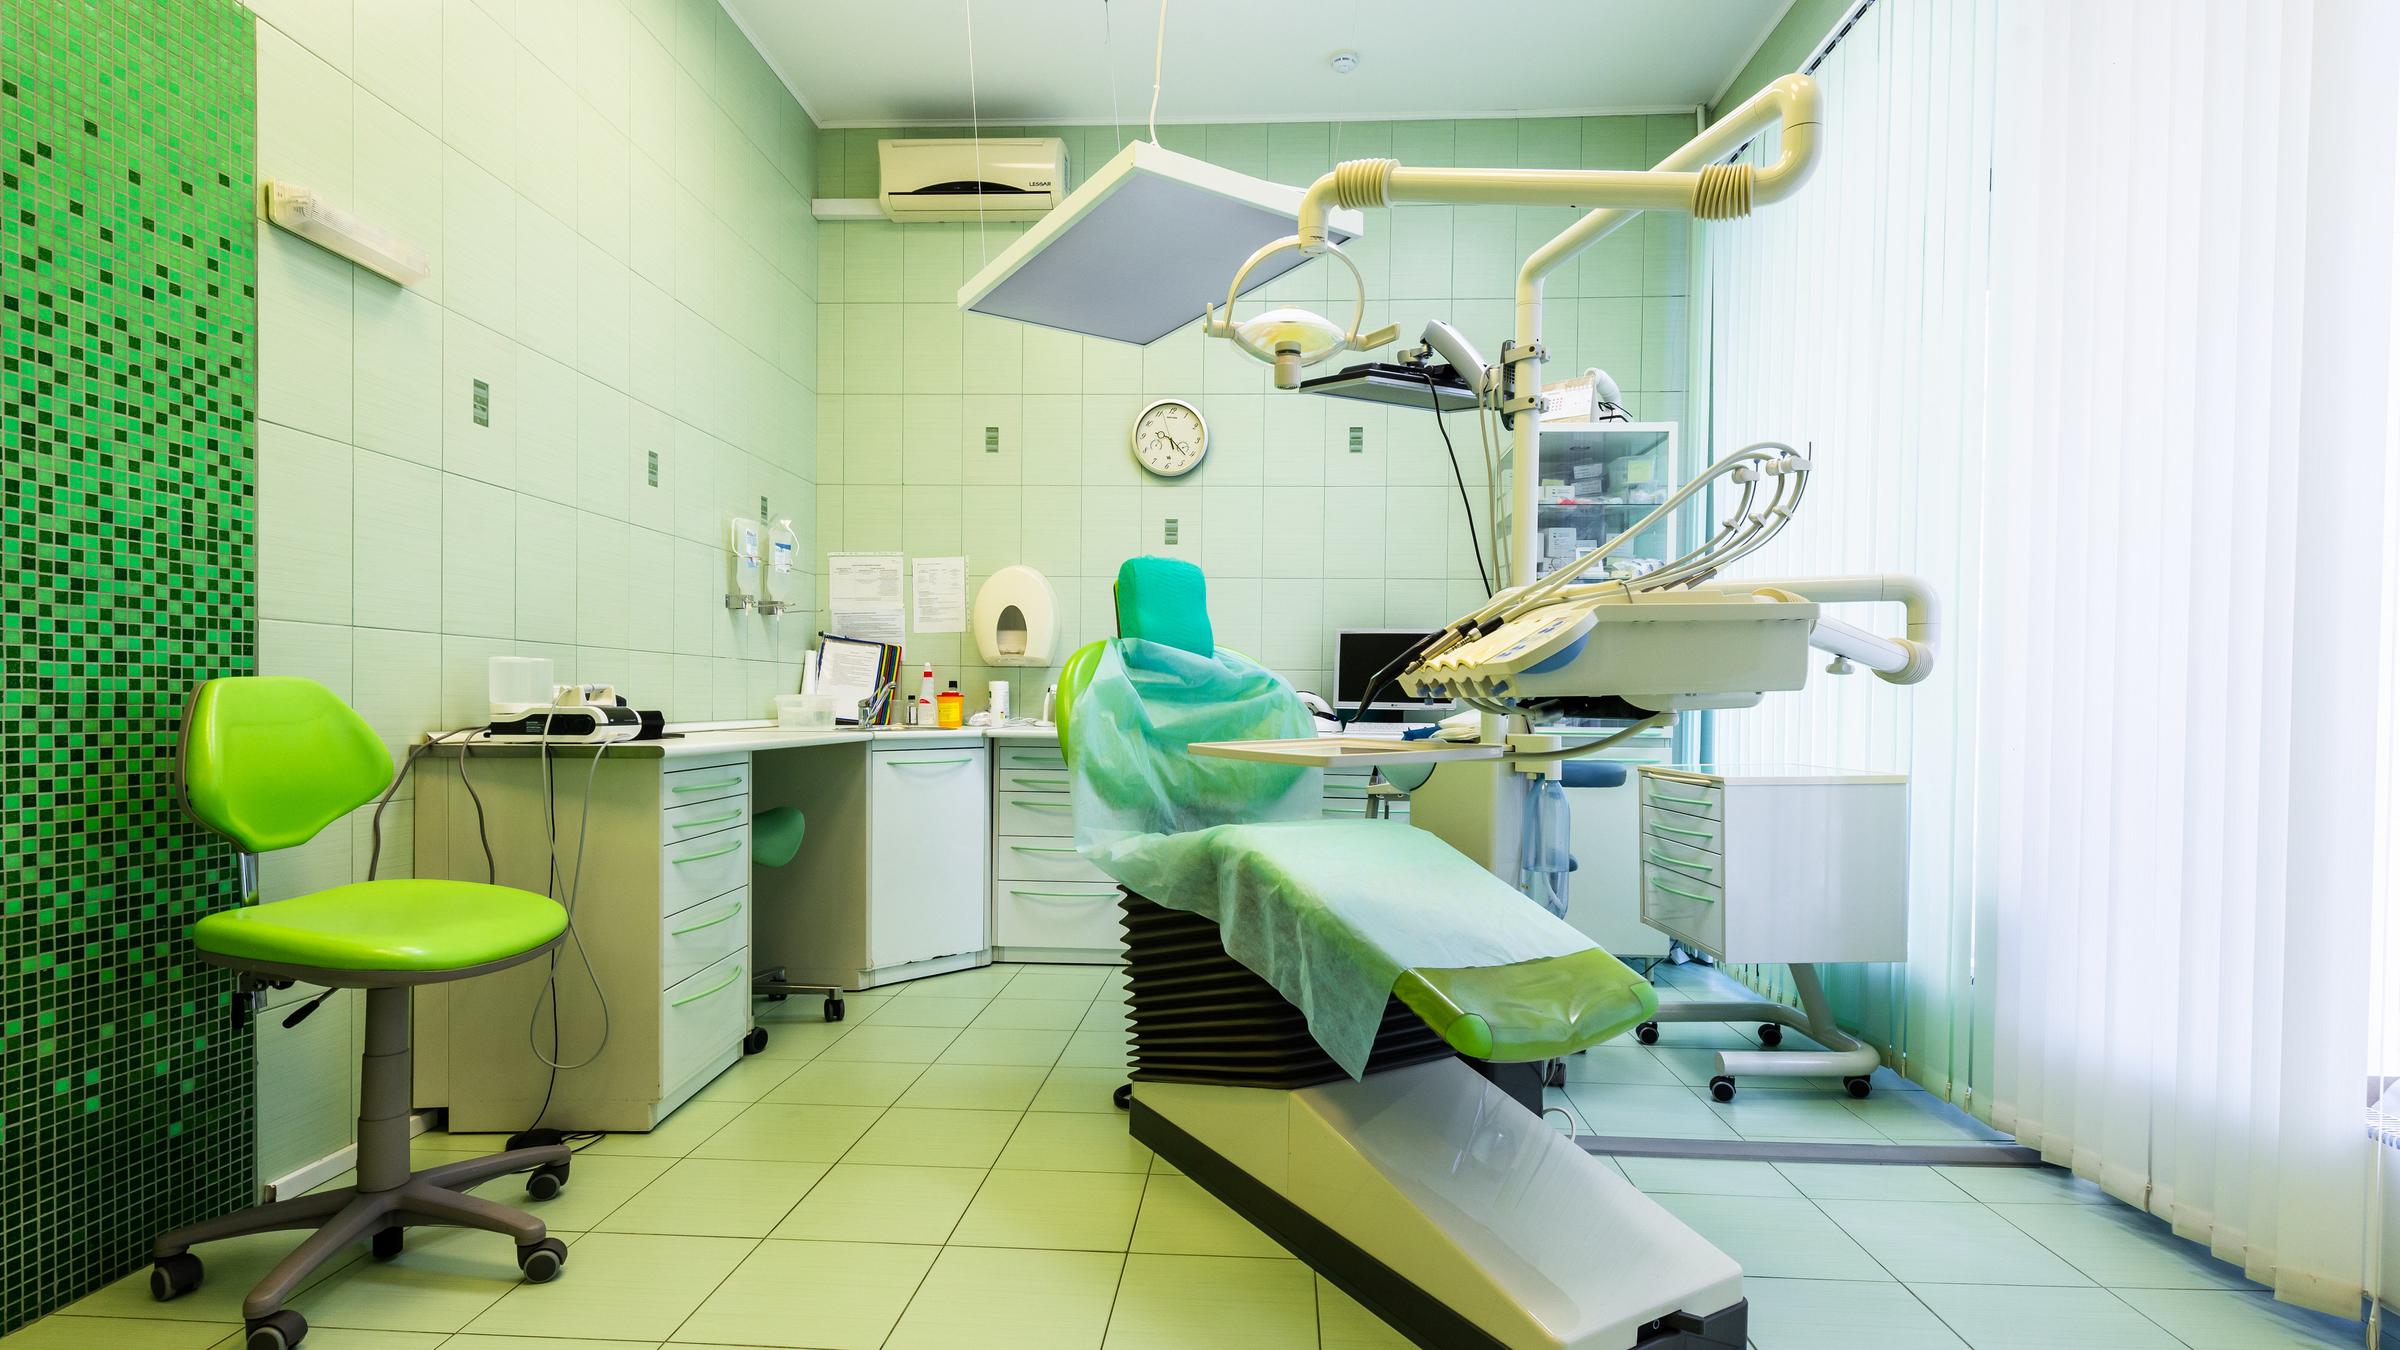 56 поликлиника стоматология прудникова